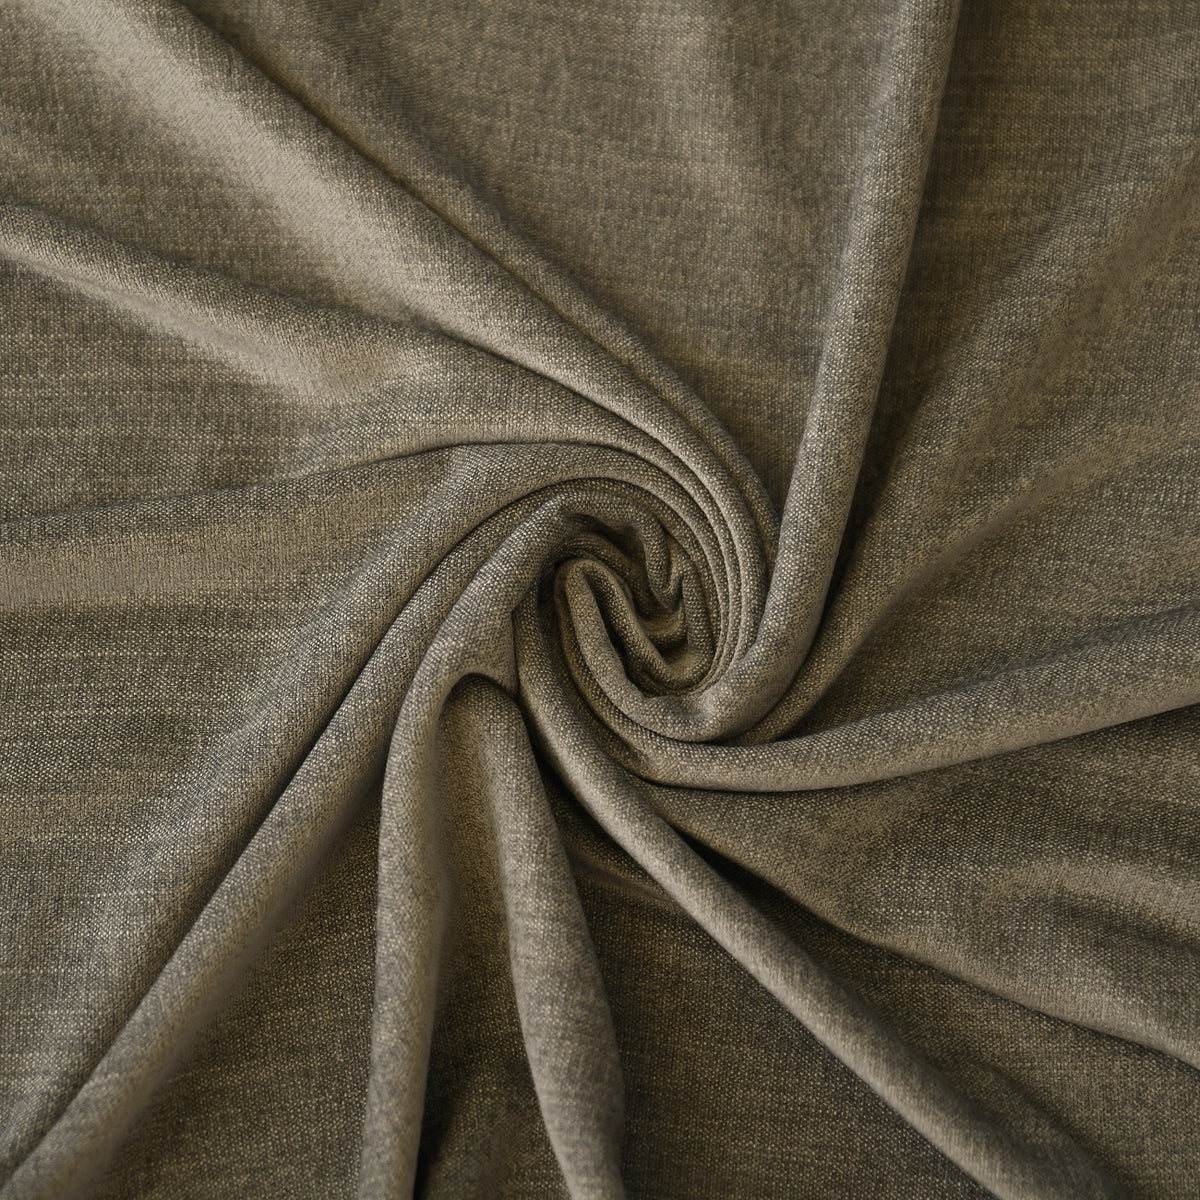 Night curtain gray Yeti